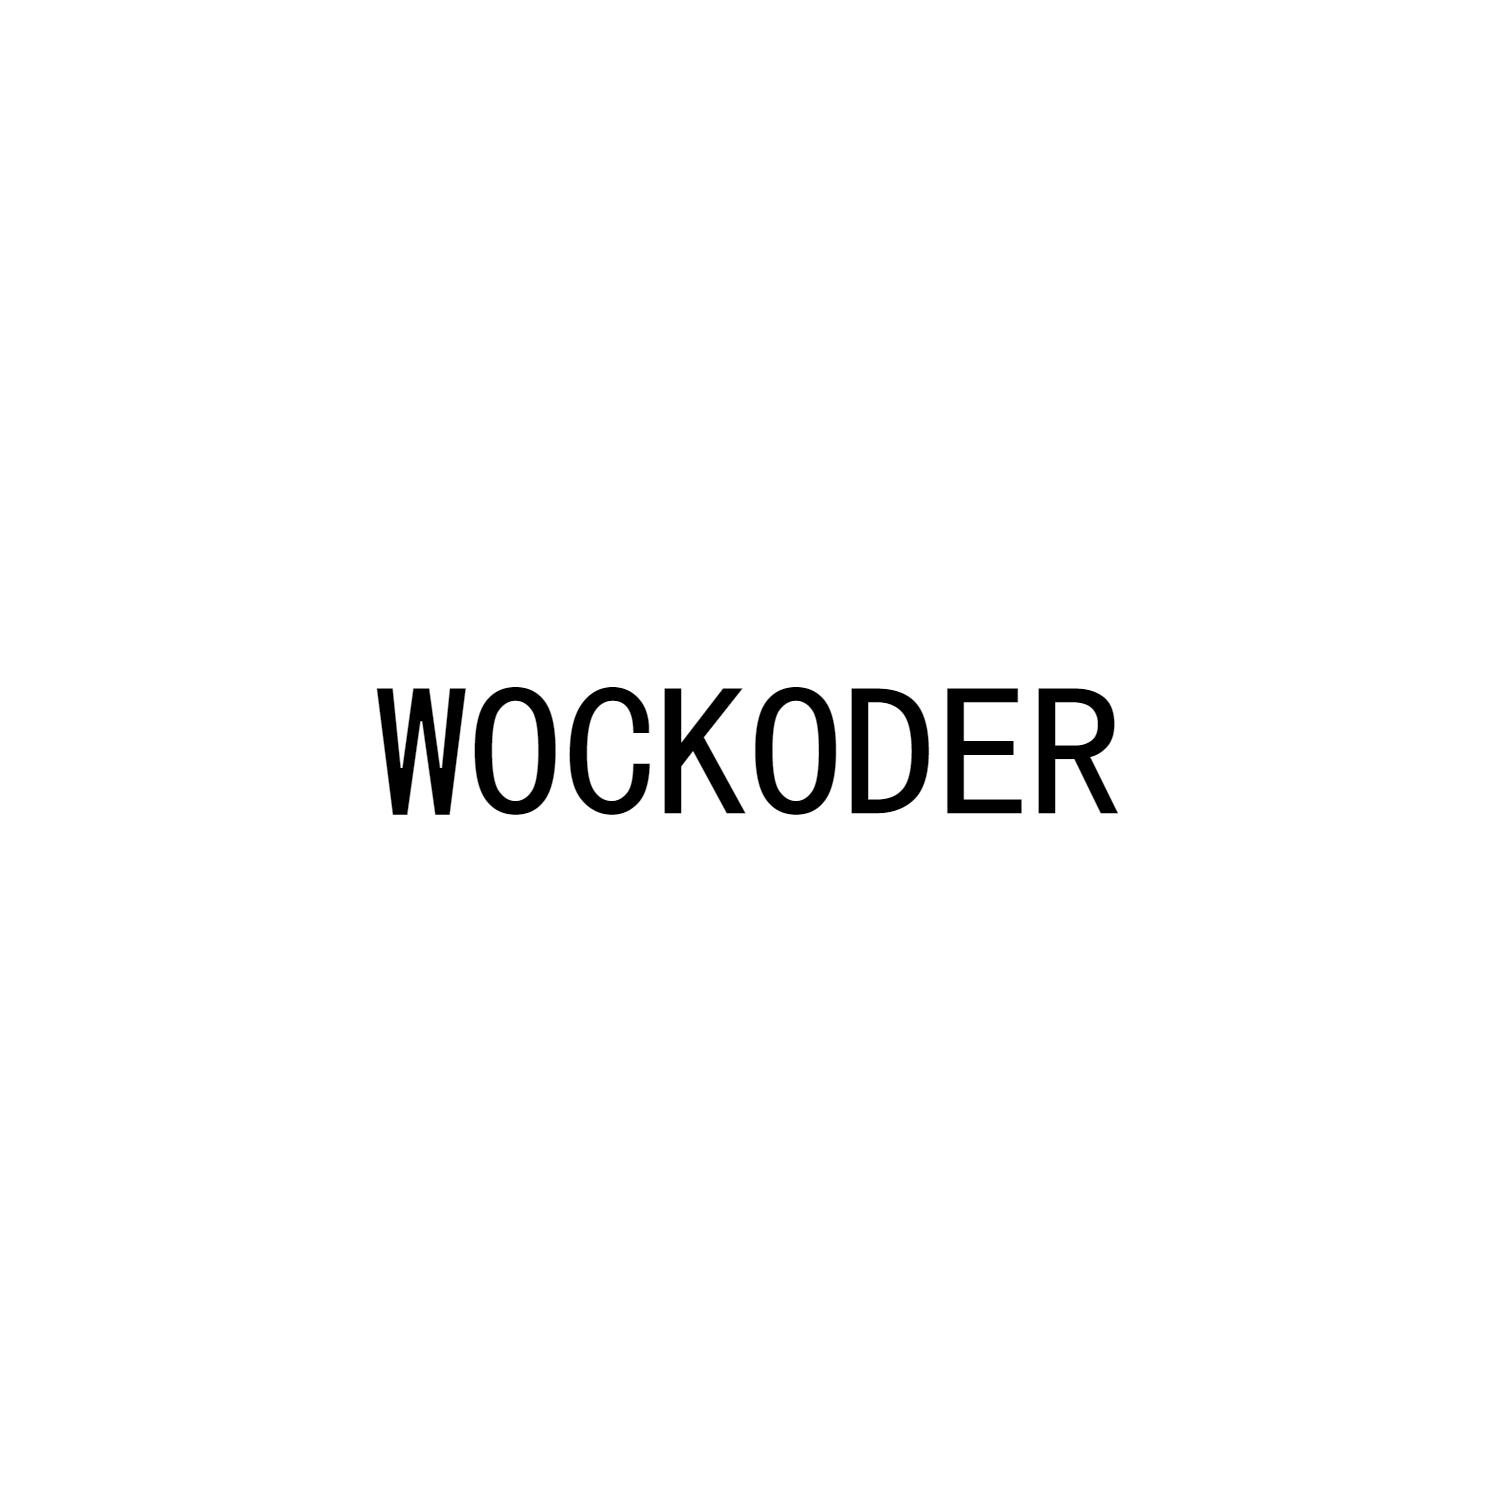 WOCKODER